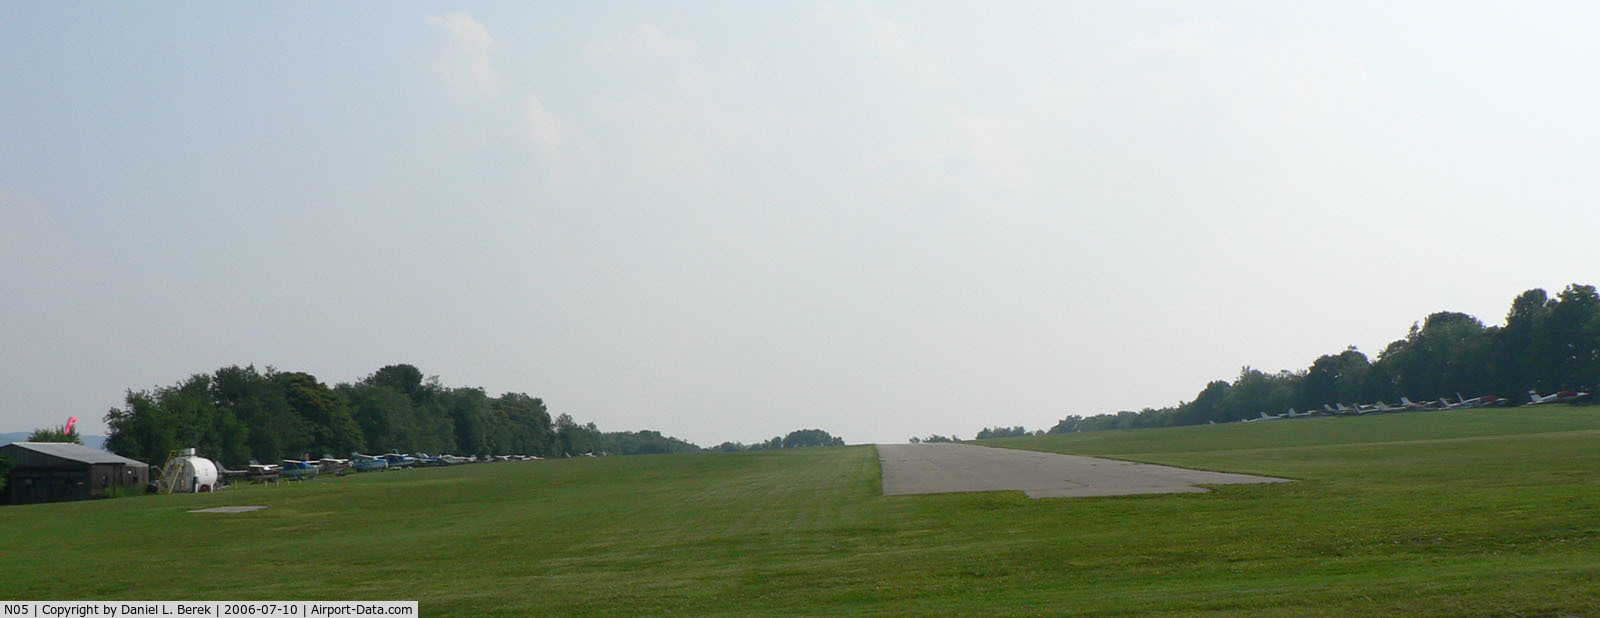 Hackettstown Airport (N05) - Hackettstown Airport is located in Mansfield, just southwest of Hackettstown, Warren County,NJ.